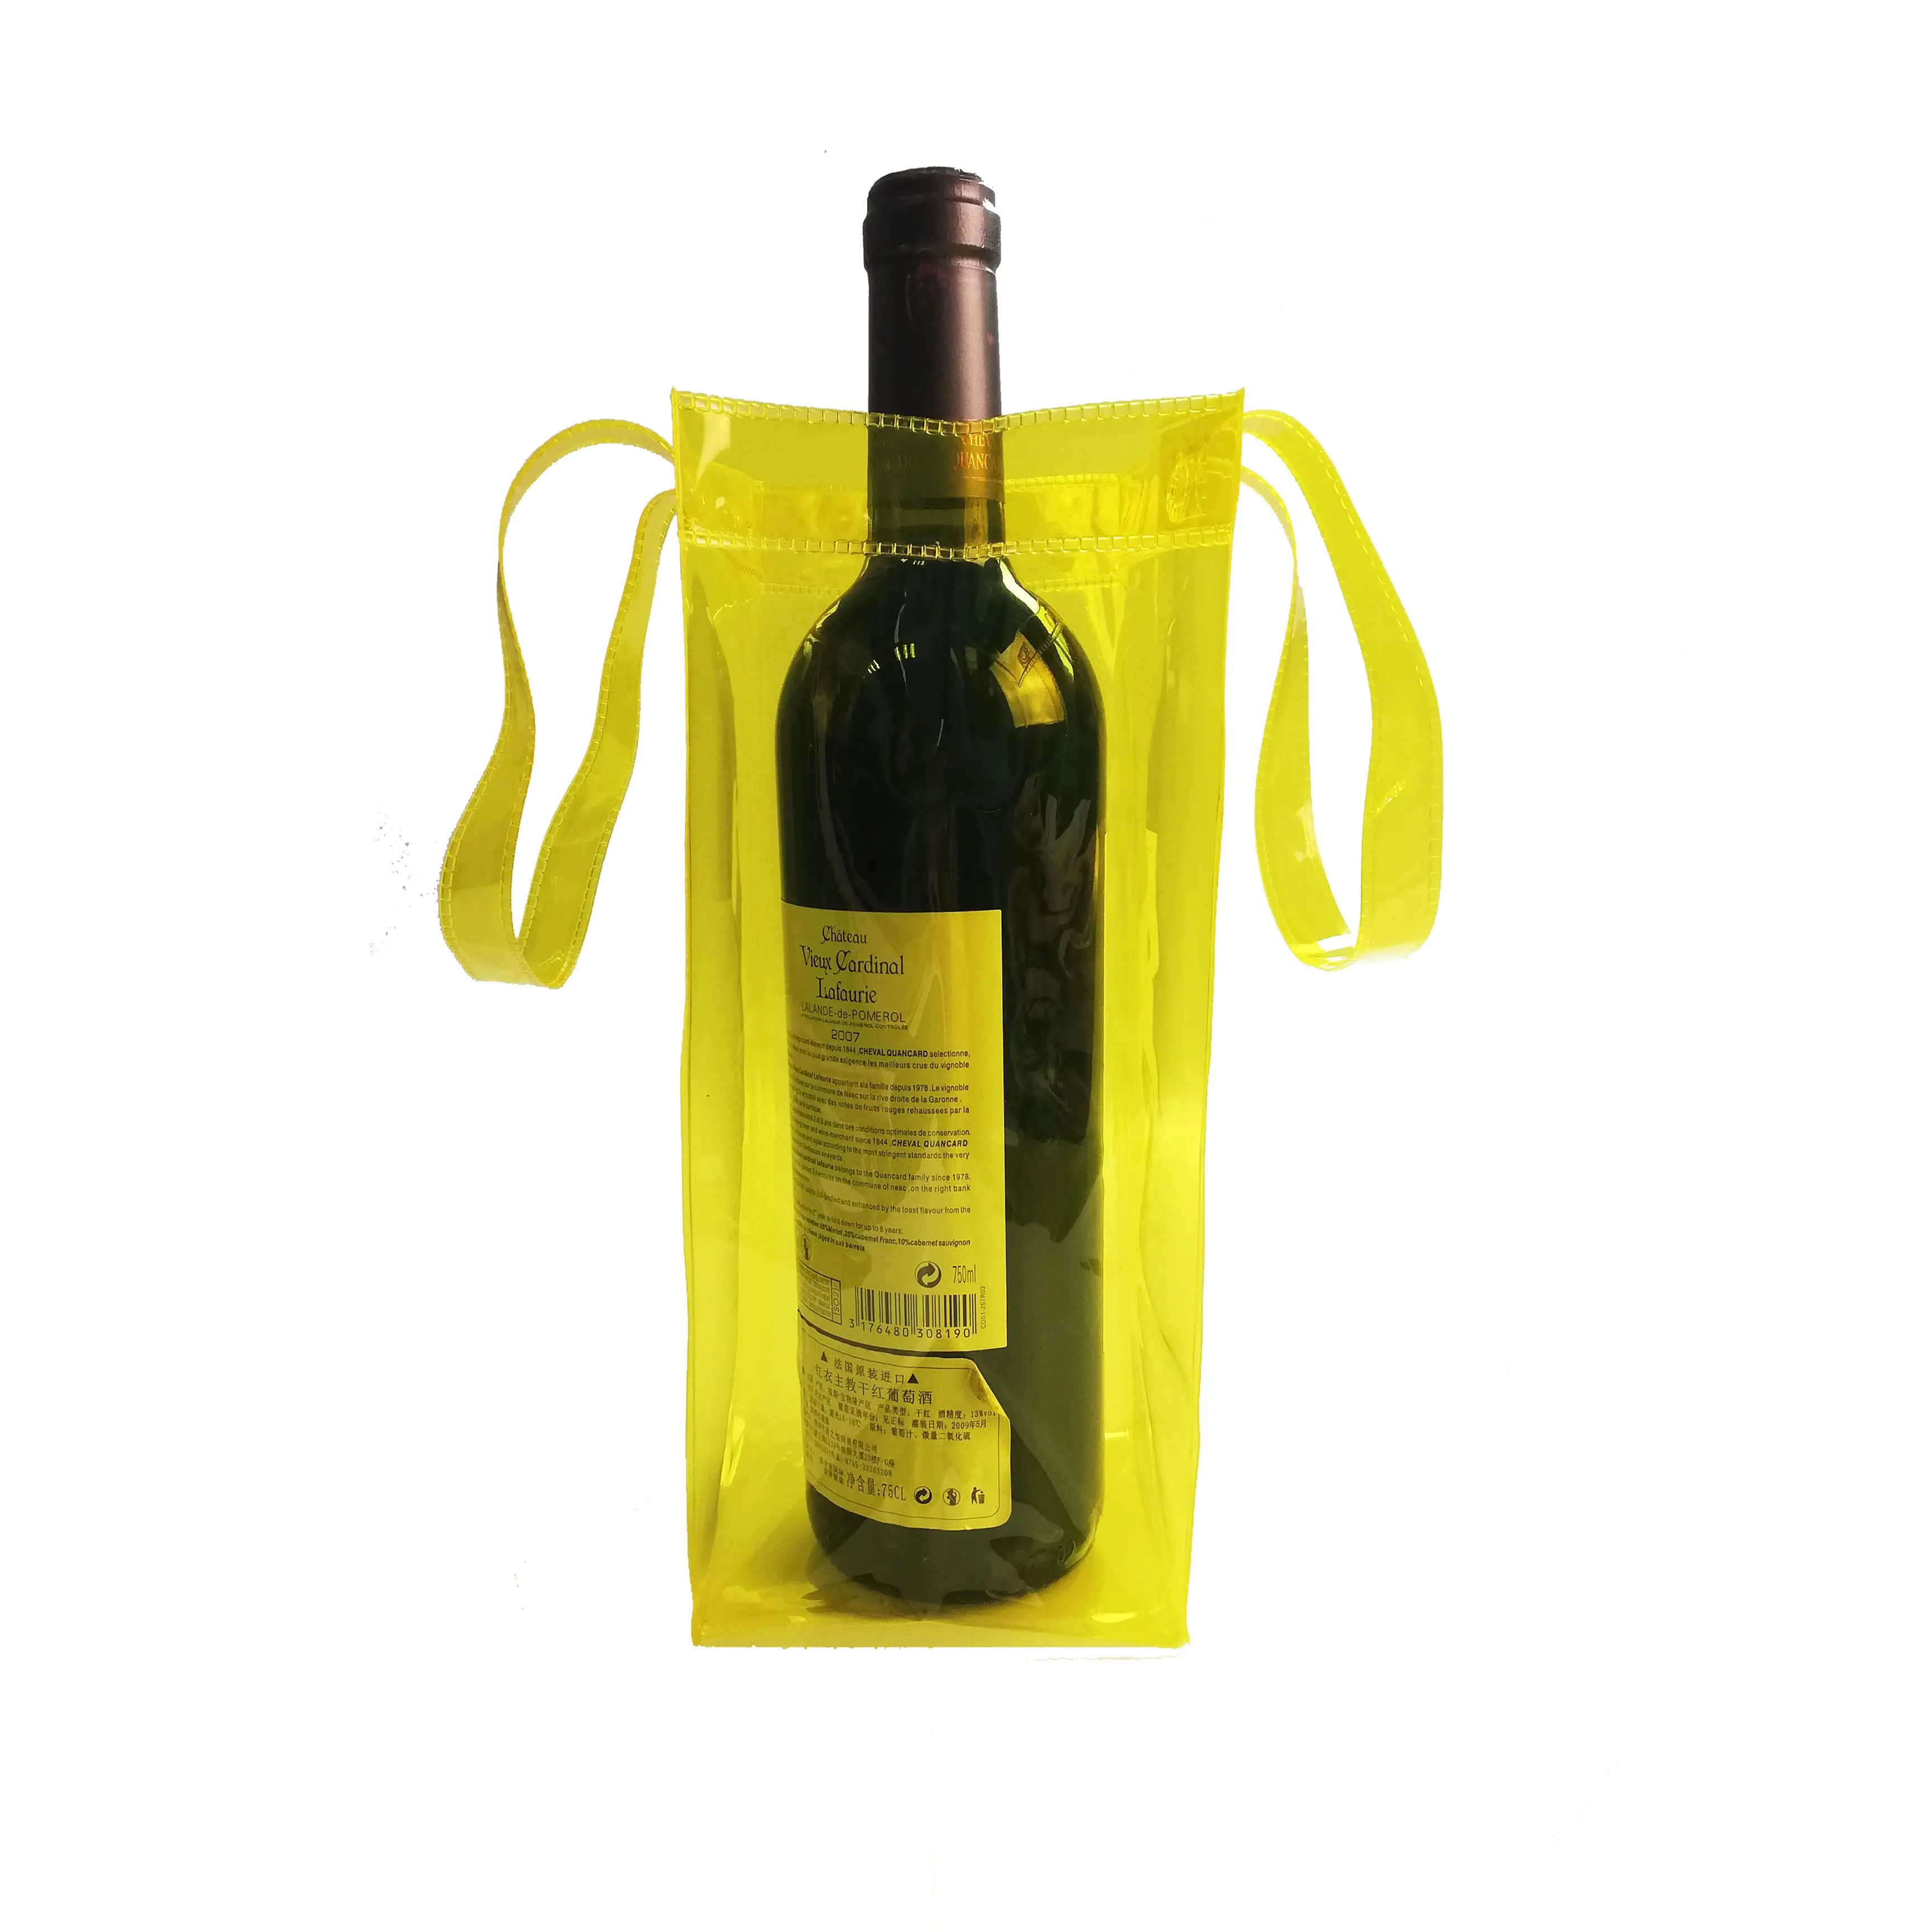 الأفضل مبيعاً أكياس تبريد زجاجة نبيذ من البلاستيك PVC سعة 1.5 لتر أكياس بلاستيكية لتبريد زجاجة نبيذ للمشروبات يمكن إعادة استخدامها